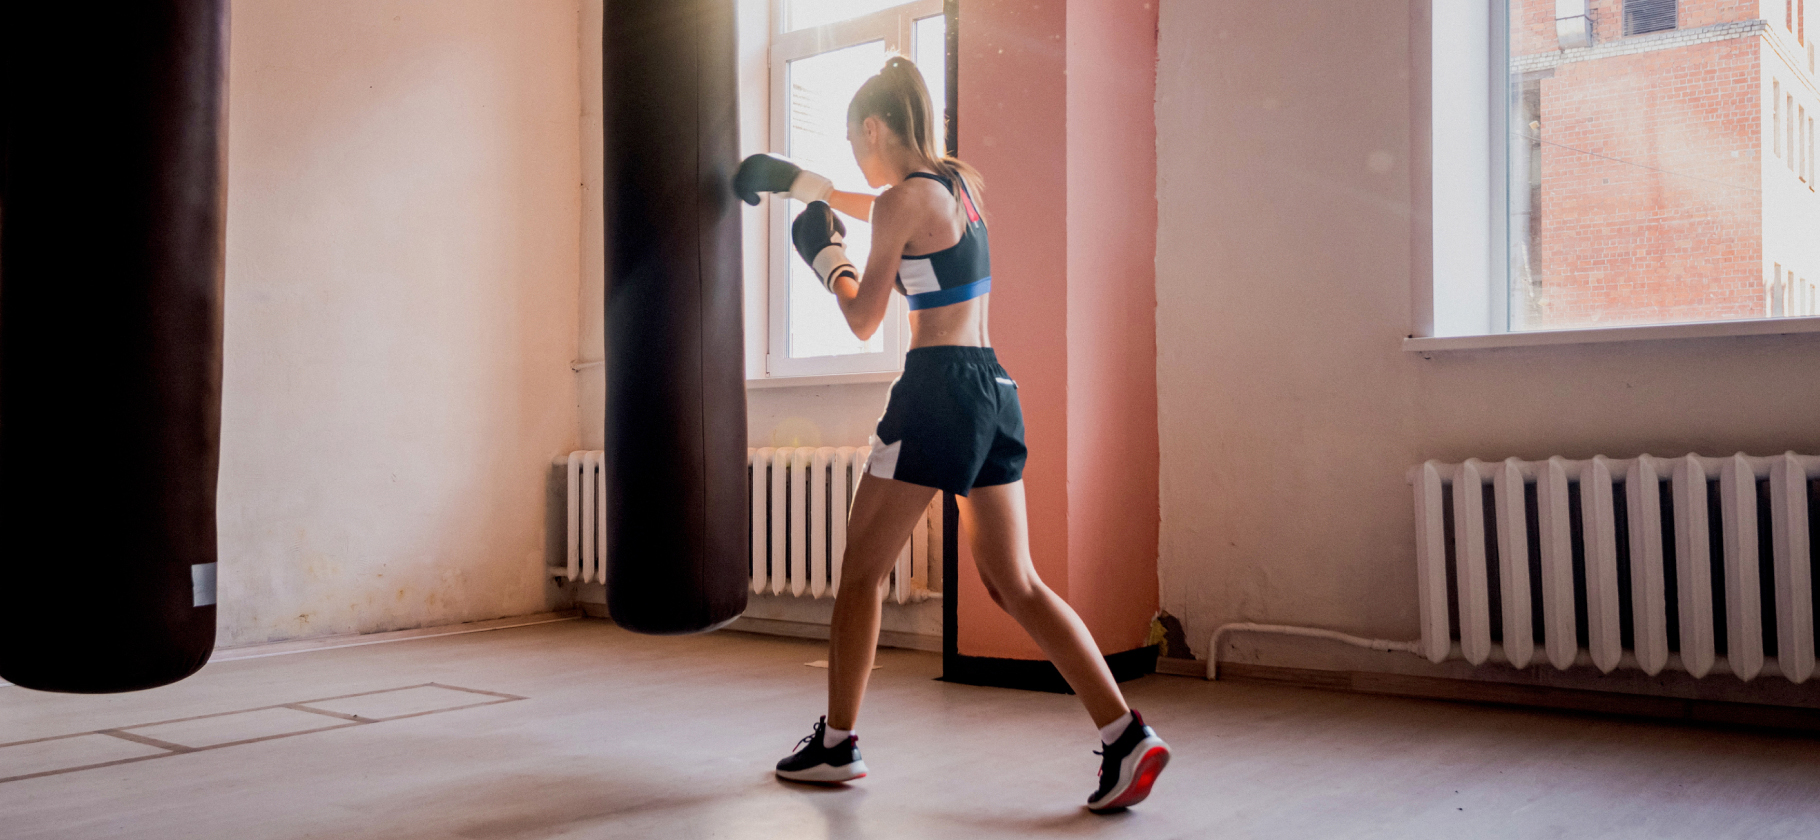 Как повесить боксерский мешок – практические советы